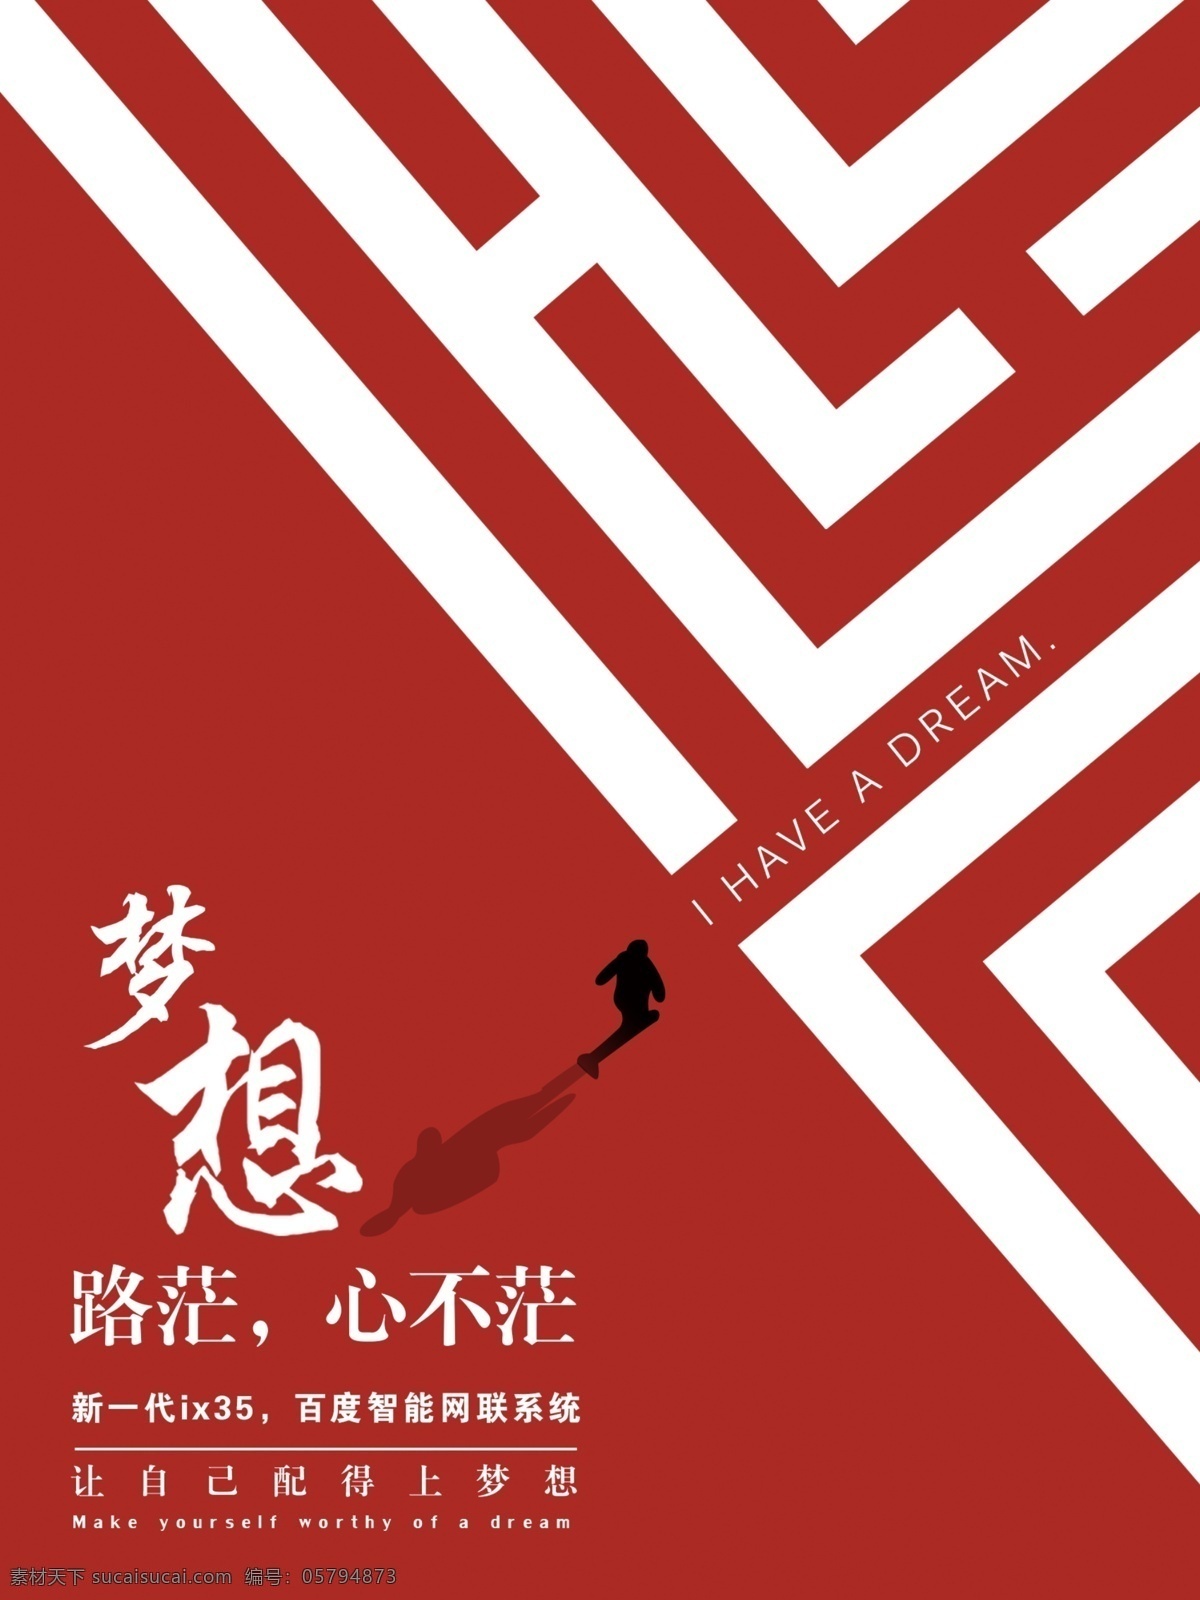 梦想 迷茫创意海报 早安 迷茫 拐角 人生选择 创意海报 早上好 北京现代